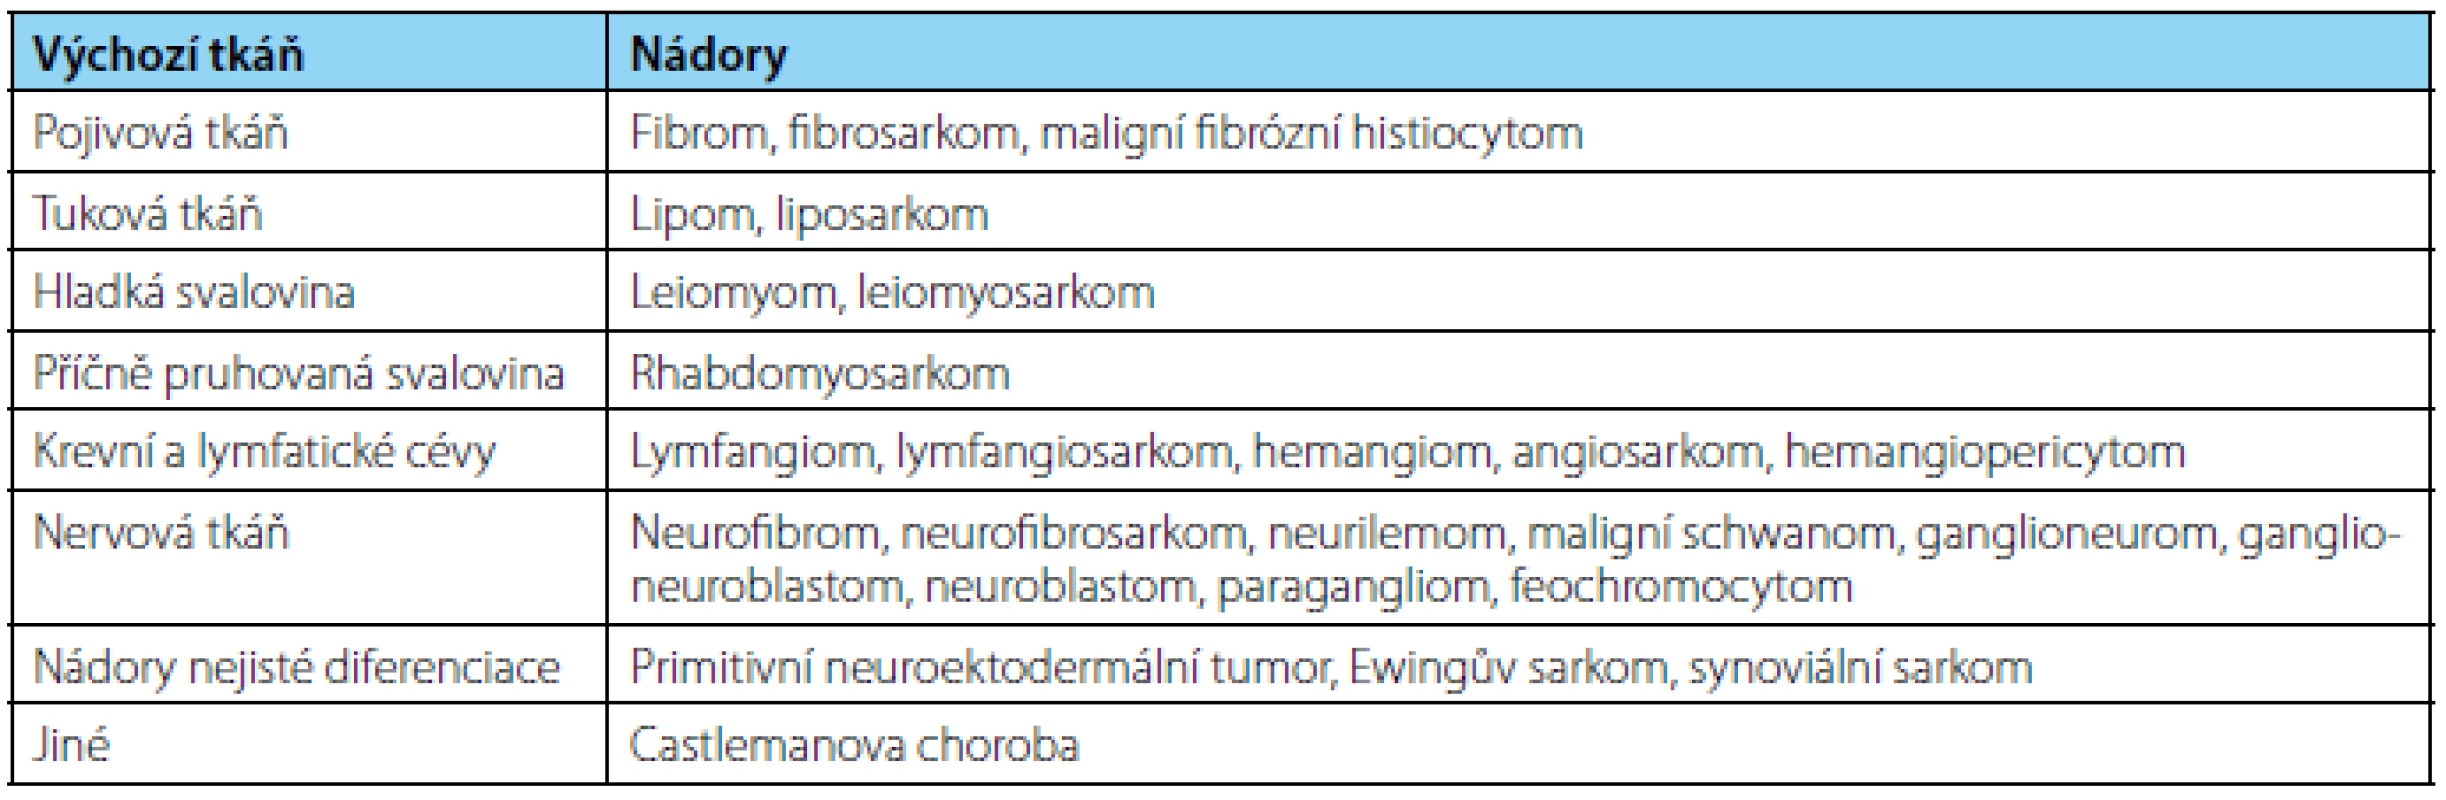 Histologická klasifikace primárních nádorů retroperitonea
Table 1. Histological classification of primary retroperitoneal tumours